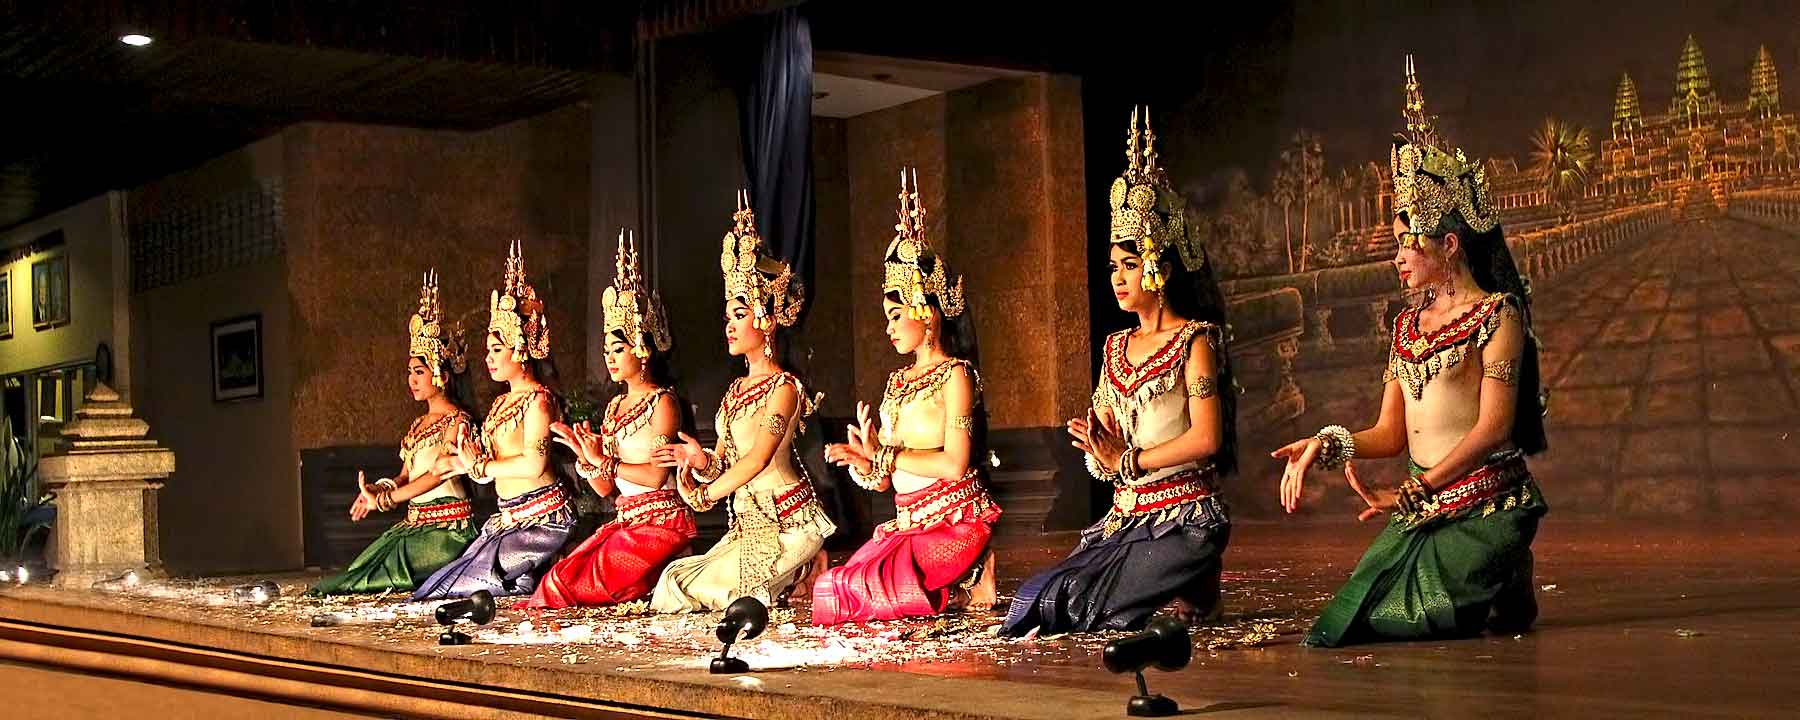 Cambodia Siem Reap Apsara Dancers